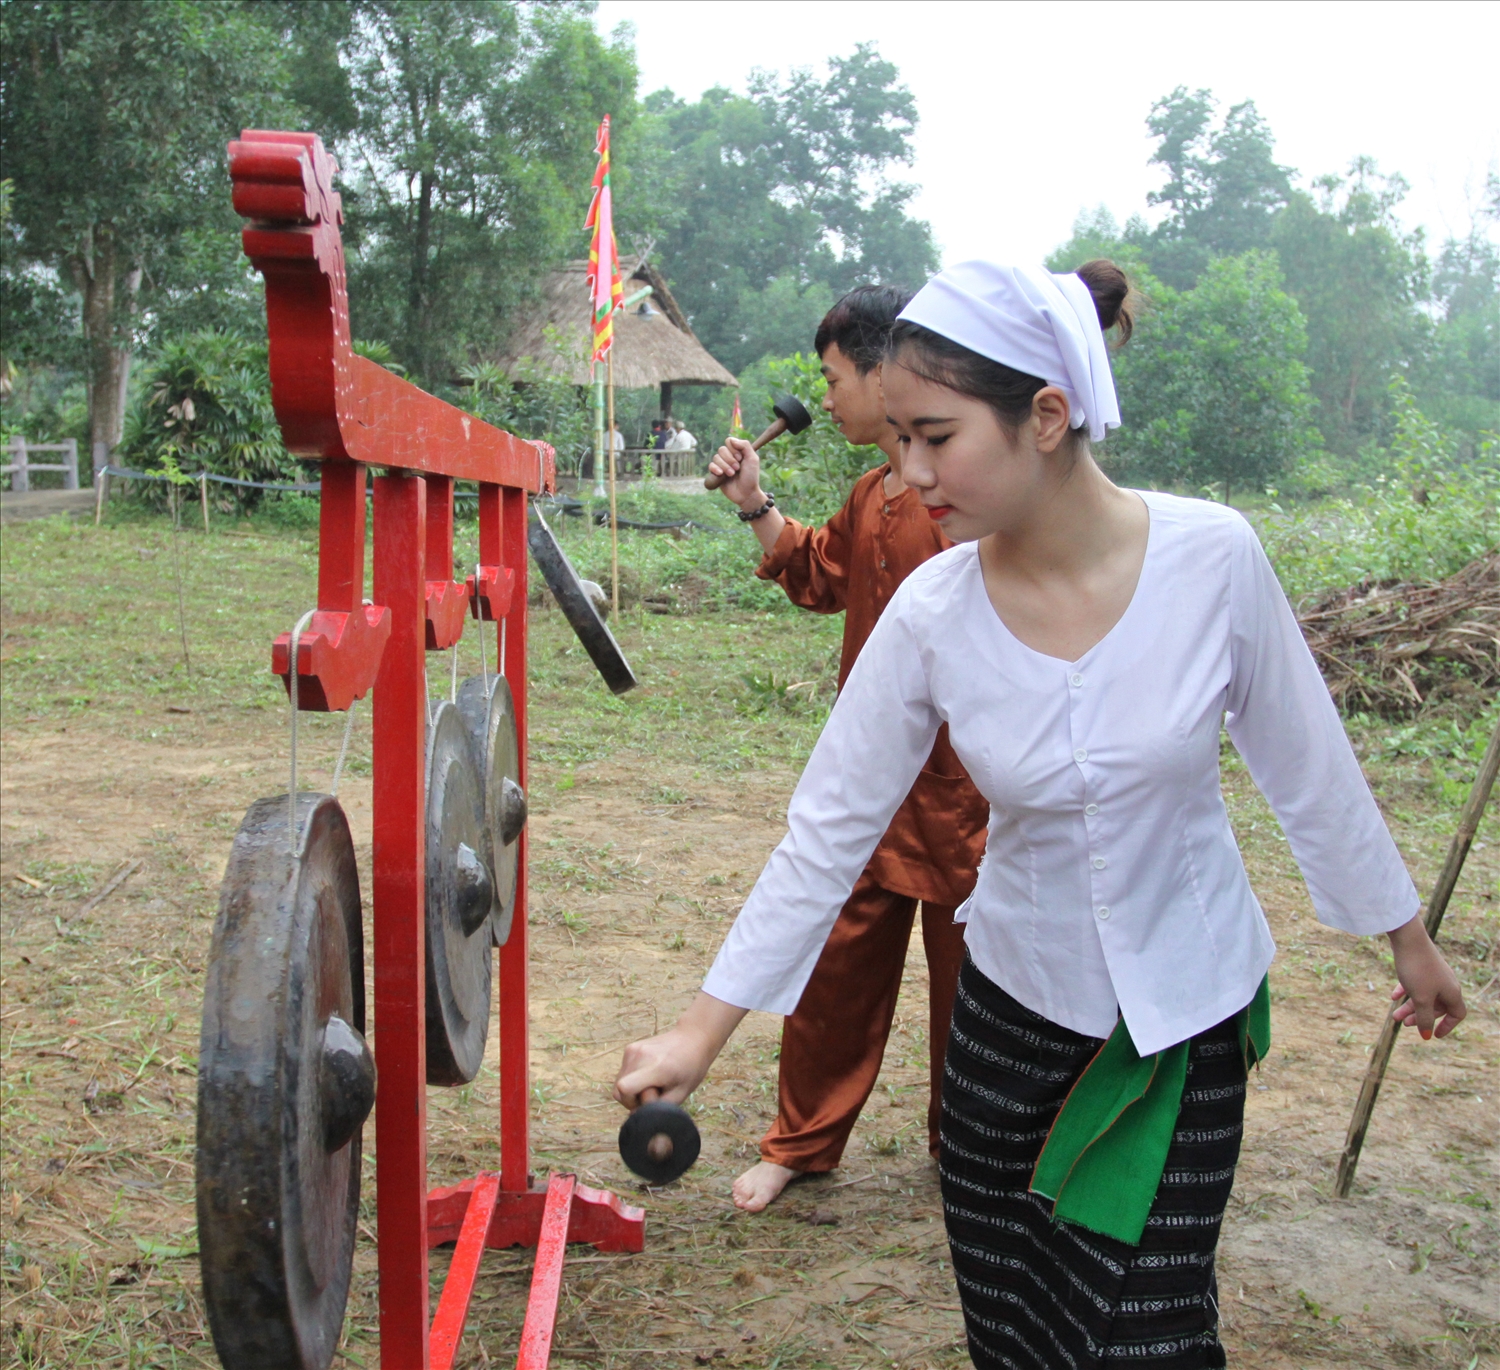 Phụ nữ Thổ sử dụng thắt lưng xanh giống phụ nữ dân tộc Thái trong vùng